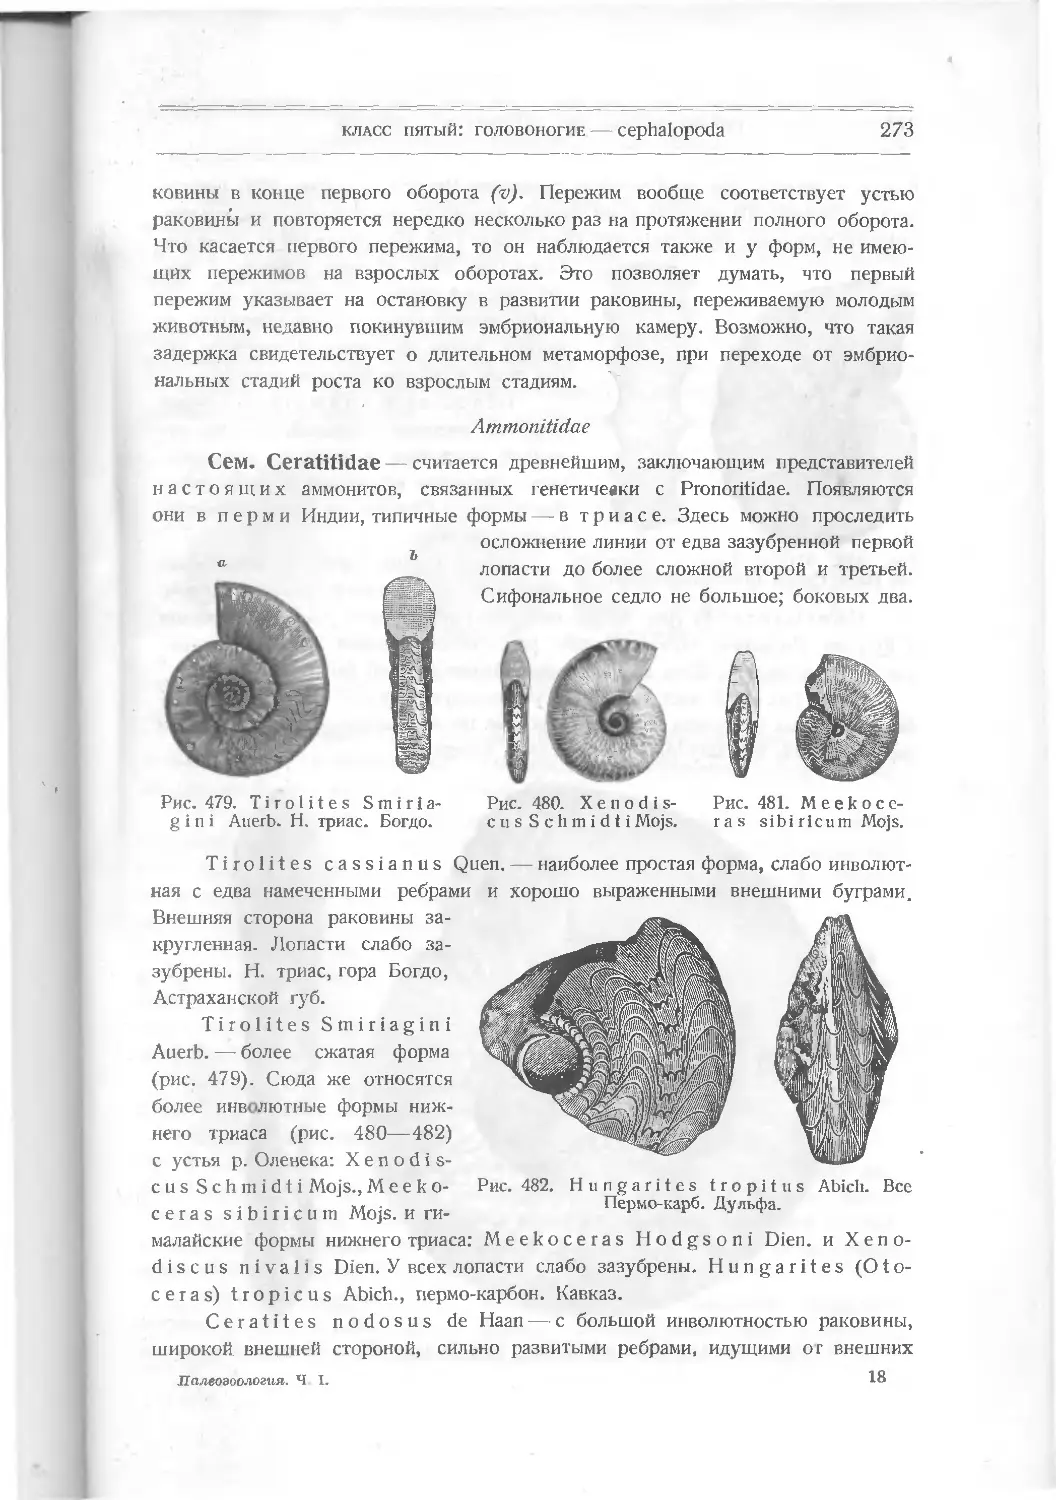 Ammonitidae